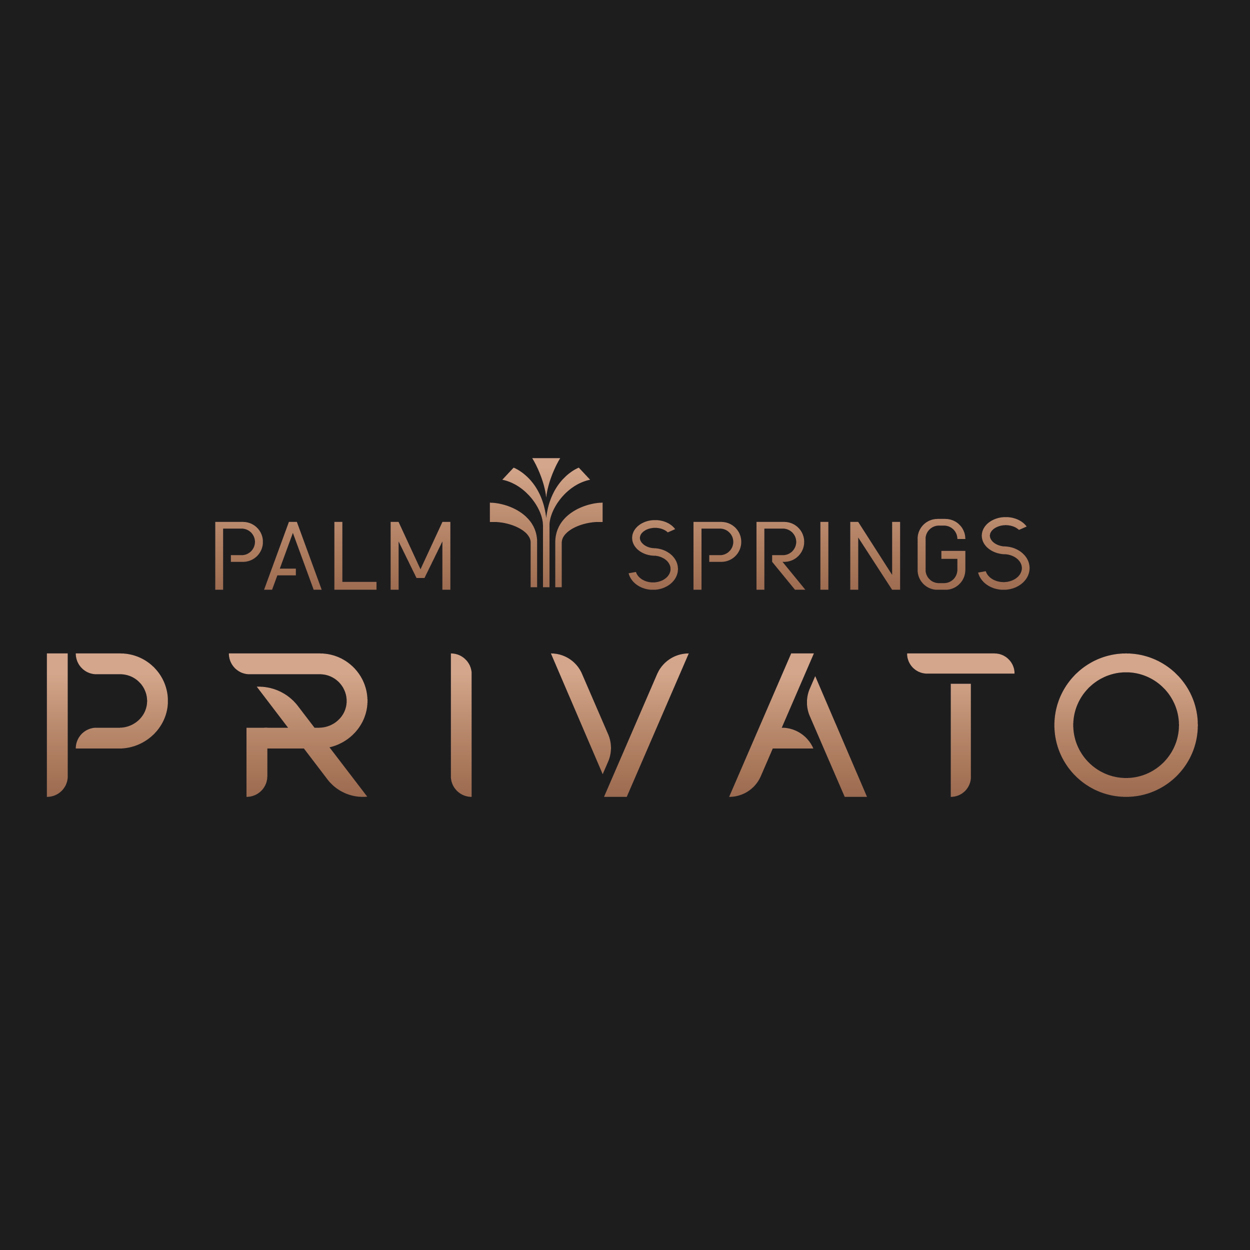 638210139120370107-Privato_logo.jpg